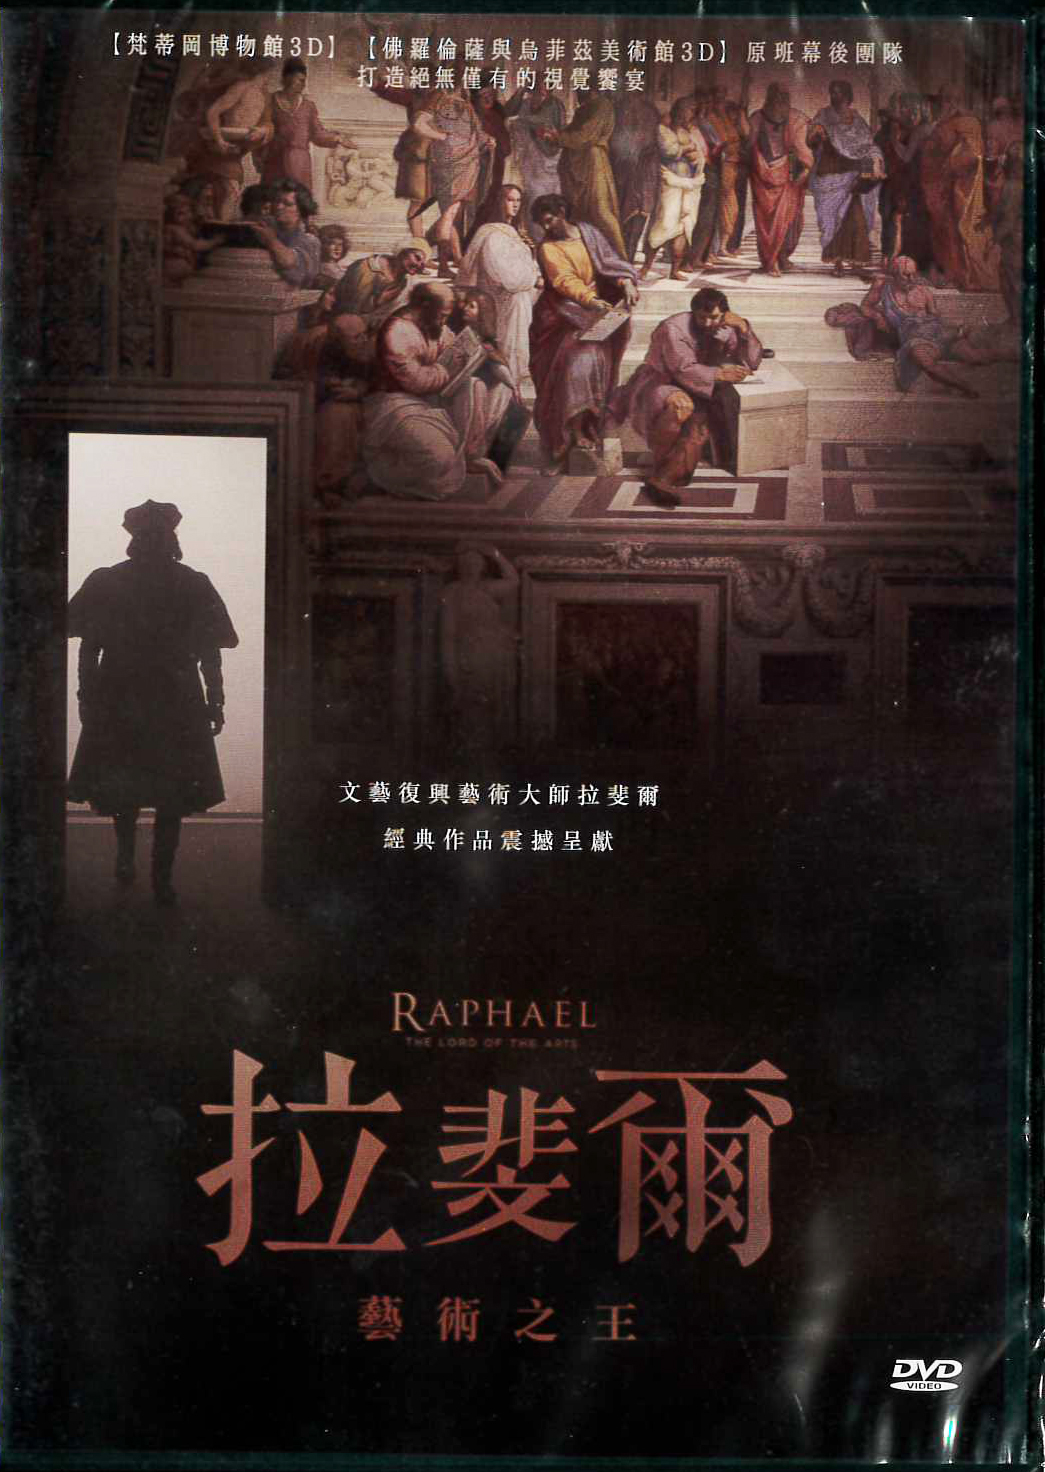 拉斐爾藝術之王[普遍級:劇情類] : Raphael: Lord of the Arts